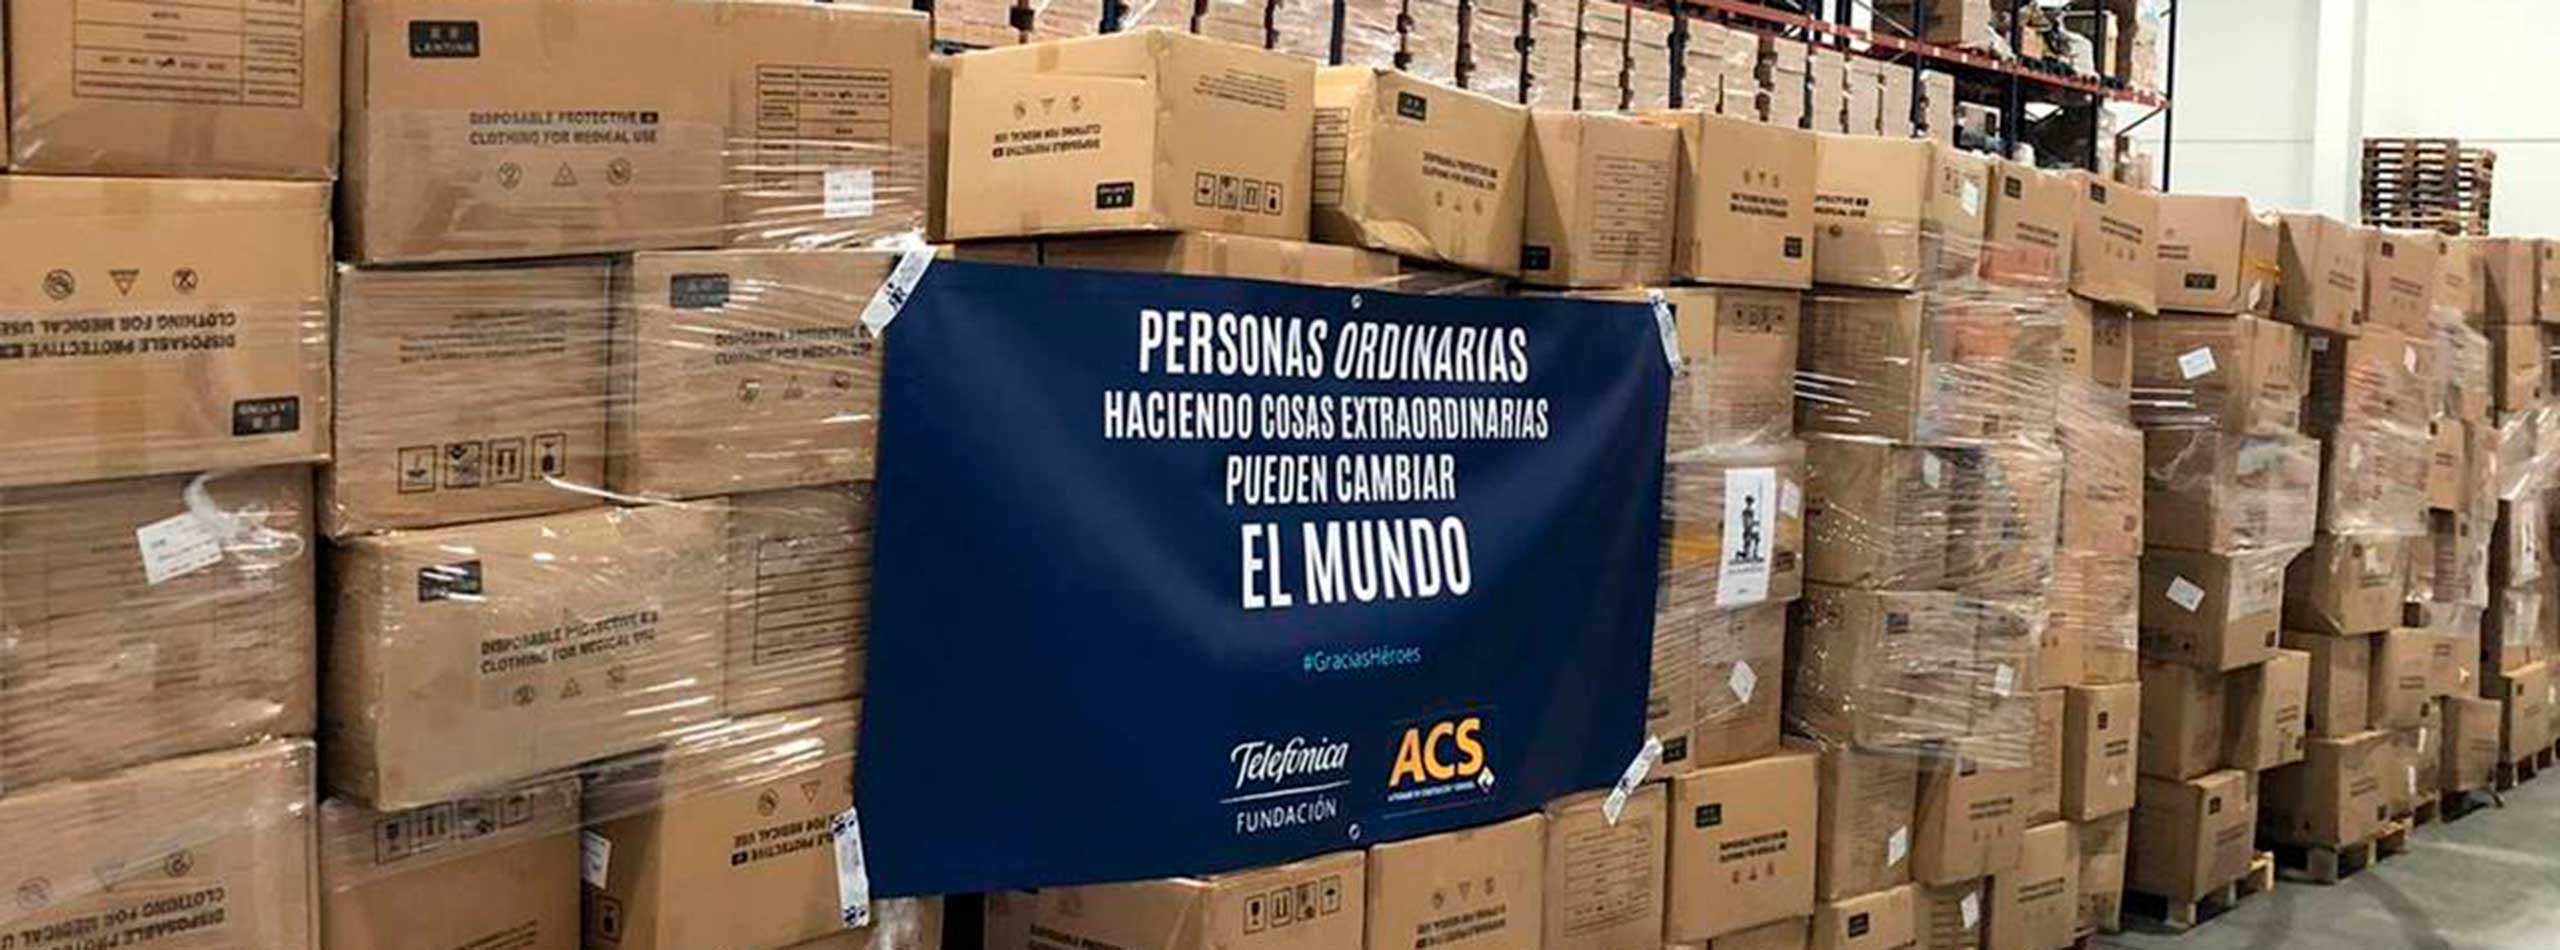 ACS y Telefónica traen a España más de 200.000 'buzos' para el personal sanitario